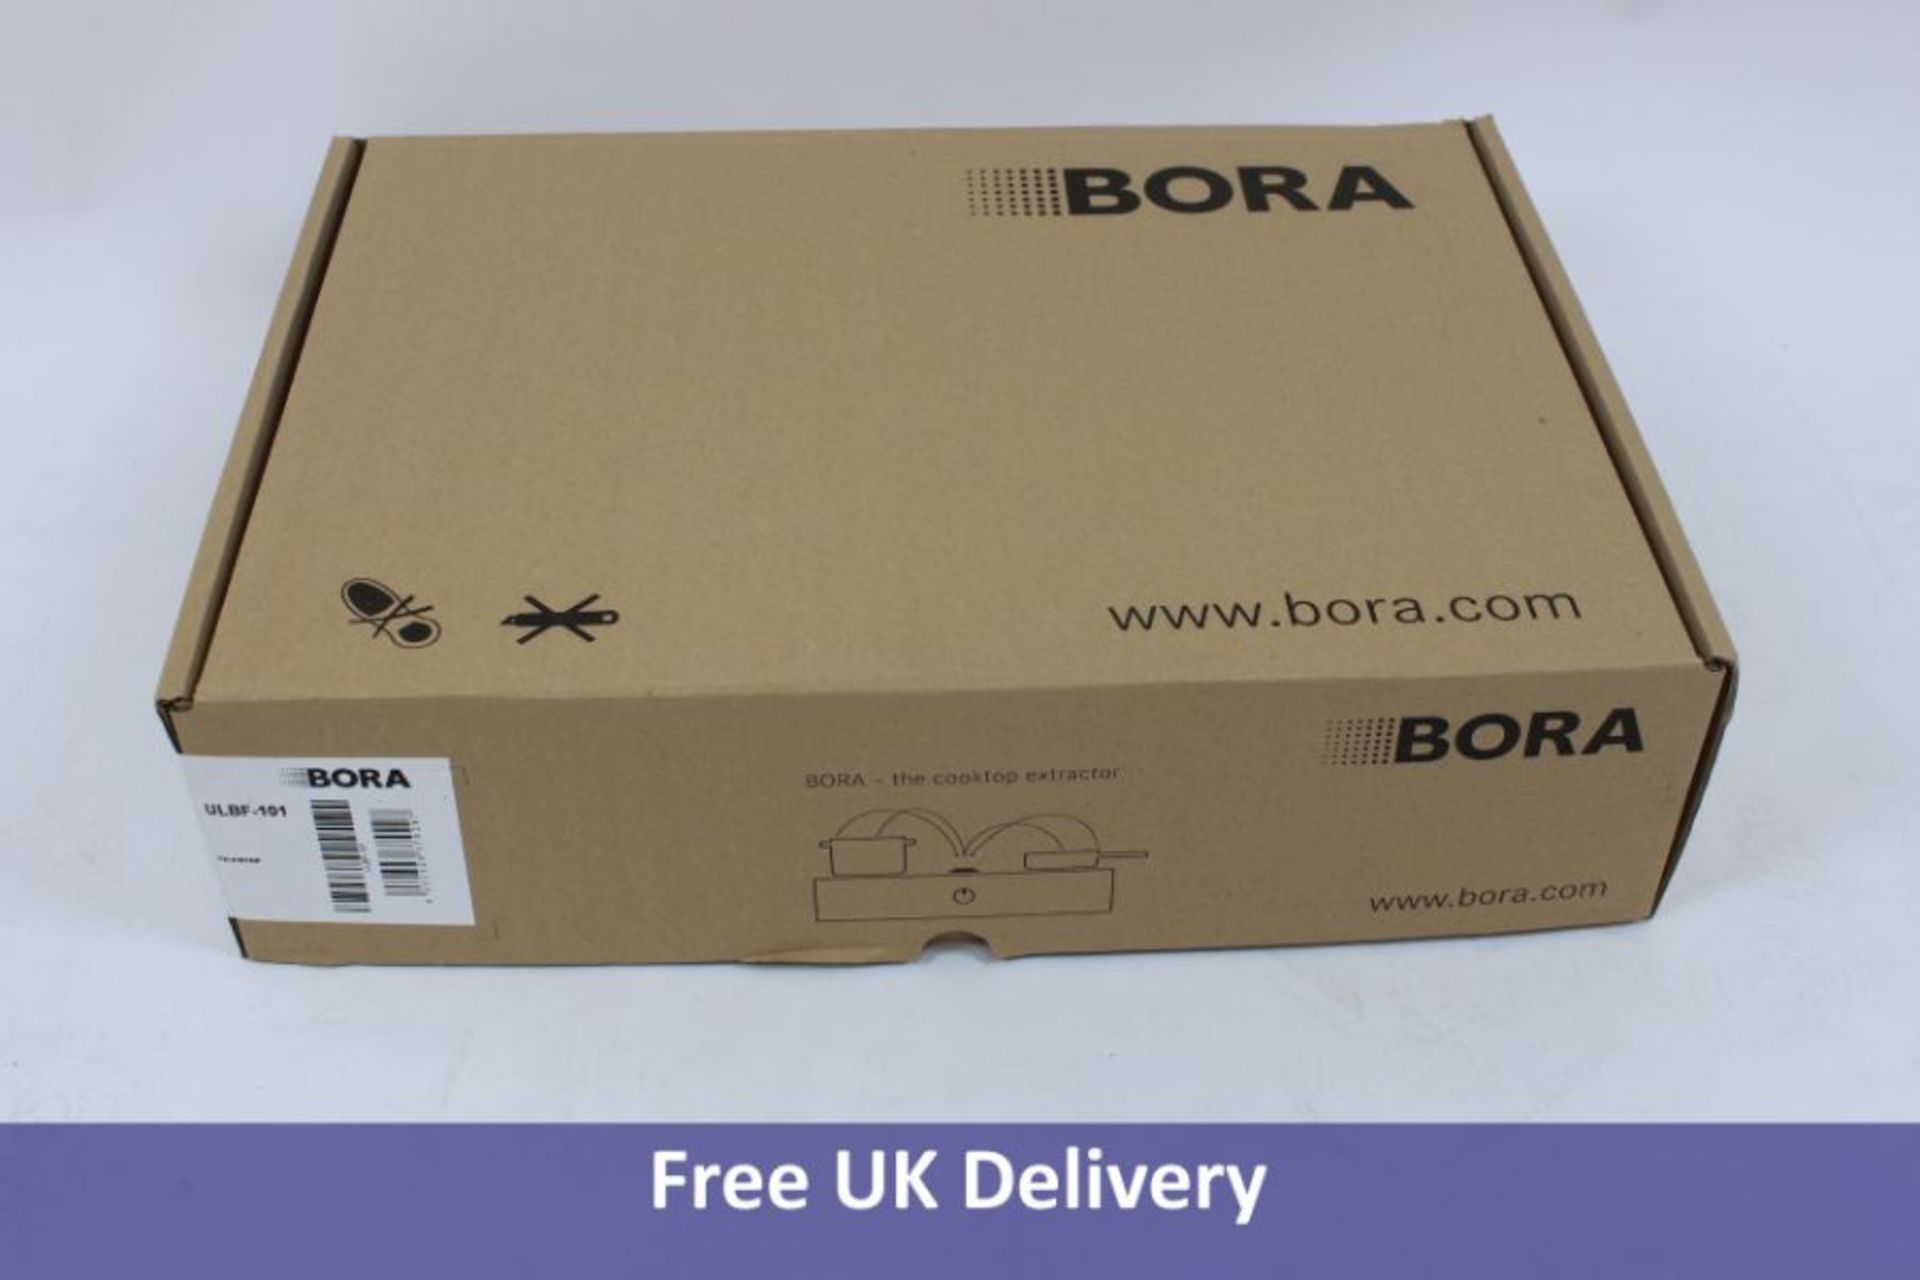 Bora Air Purification Box, Flexible